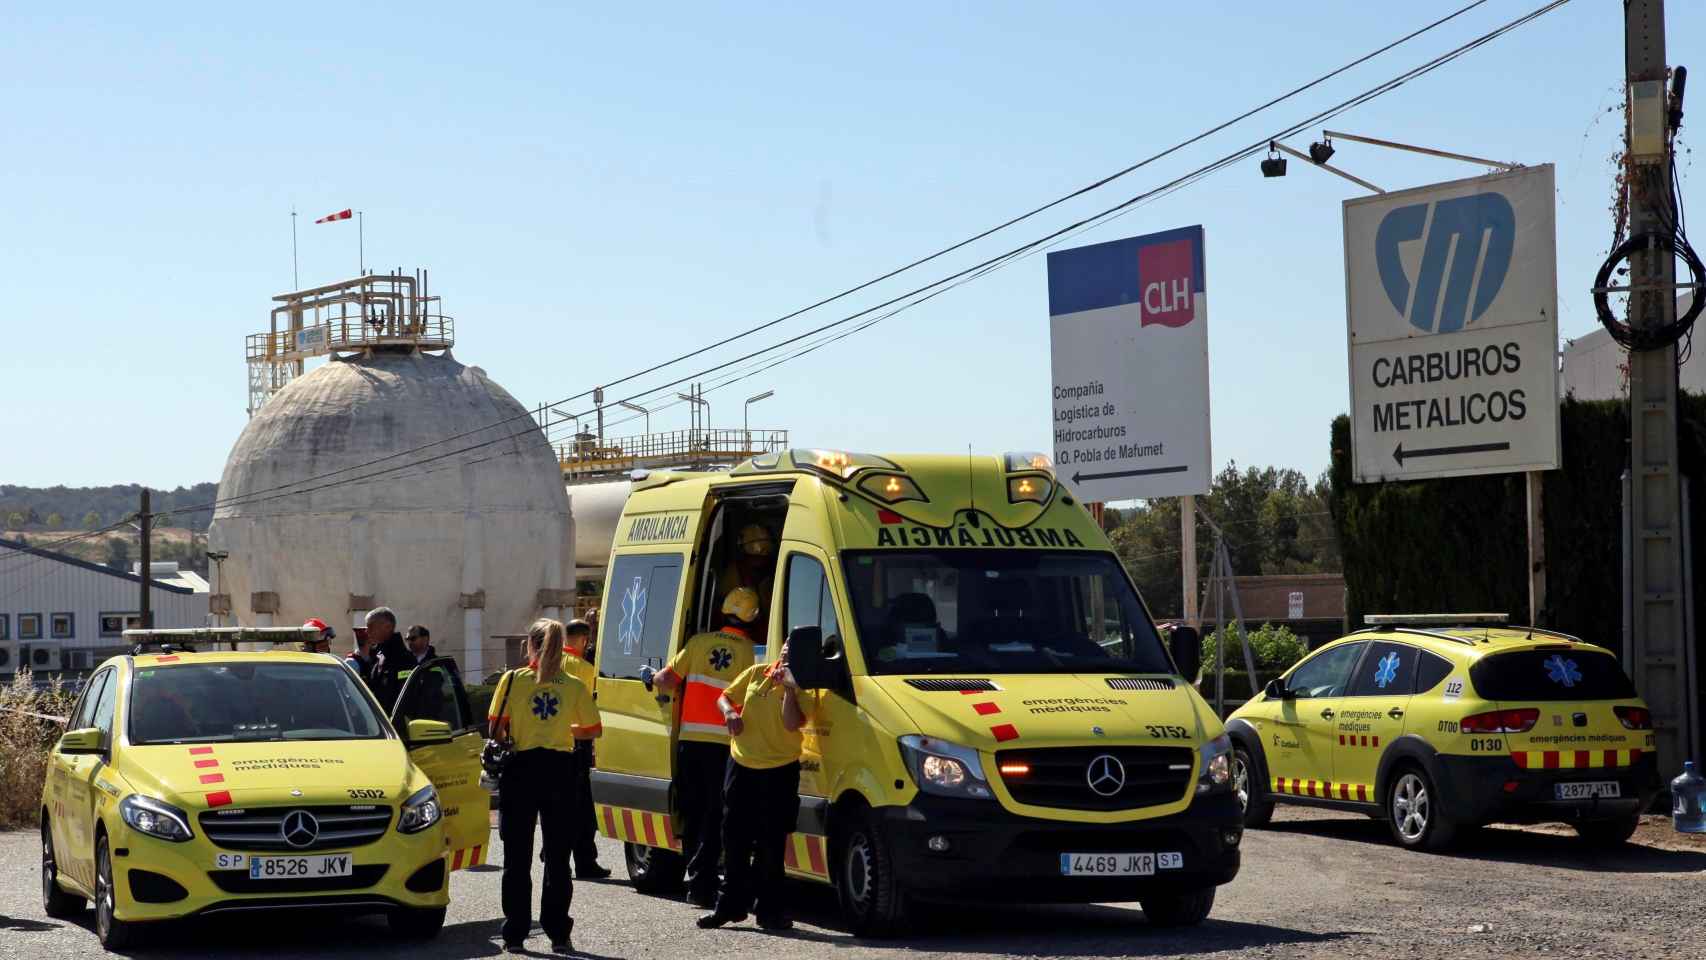 Unidades del Servei de Emergències Mèdiques en Carburos Metálicos de Tarragona tras el accidente con un muerto y un herido / EFE